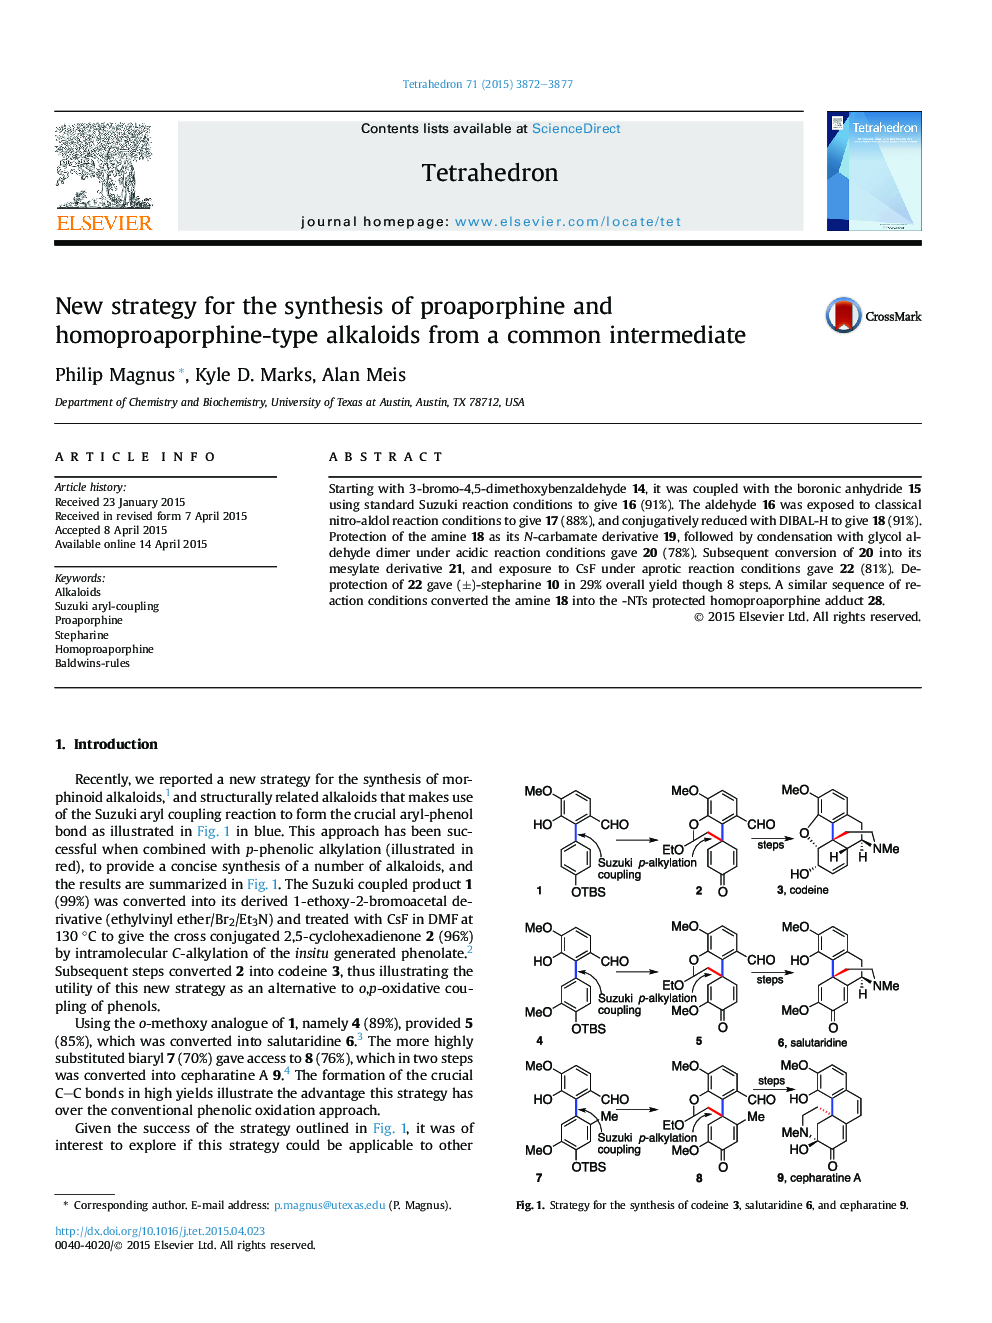 استراتژی جدید برای سنتز آلکالوئید نوع پروپارفین و هموپوراففین از یک واسطه مشترک 